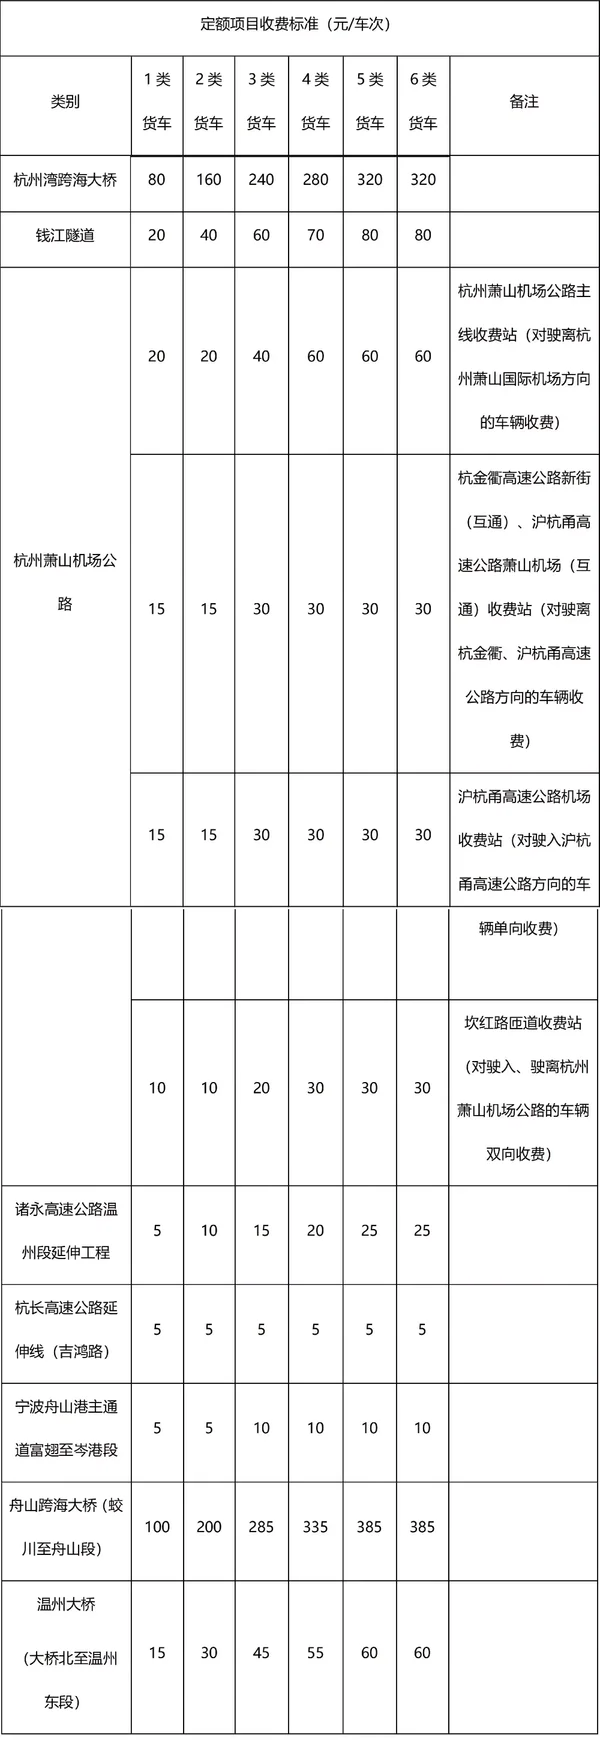 浙江省新收费标准 6轴车每公里1.747元